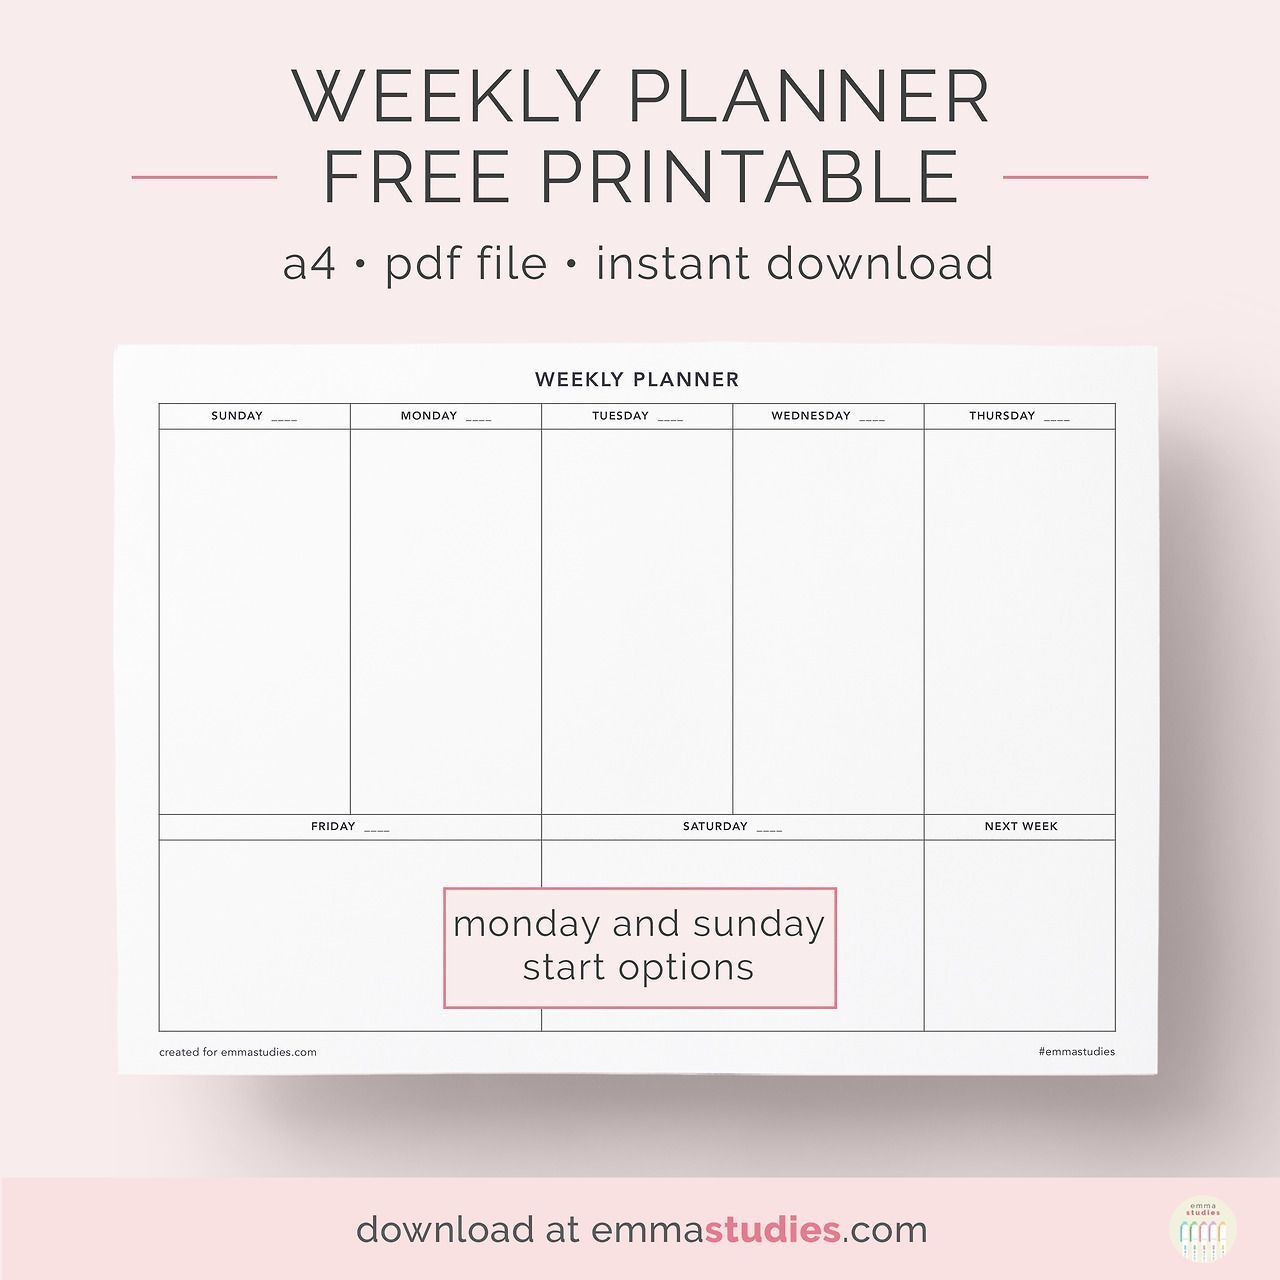 Undated Weekly Planner Free Printablea Simple Printable For